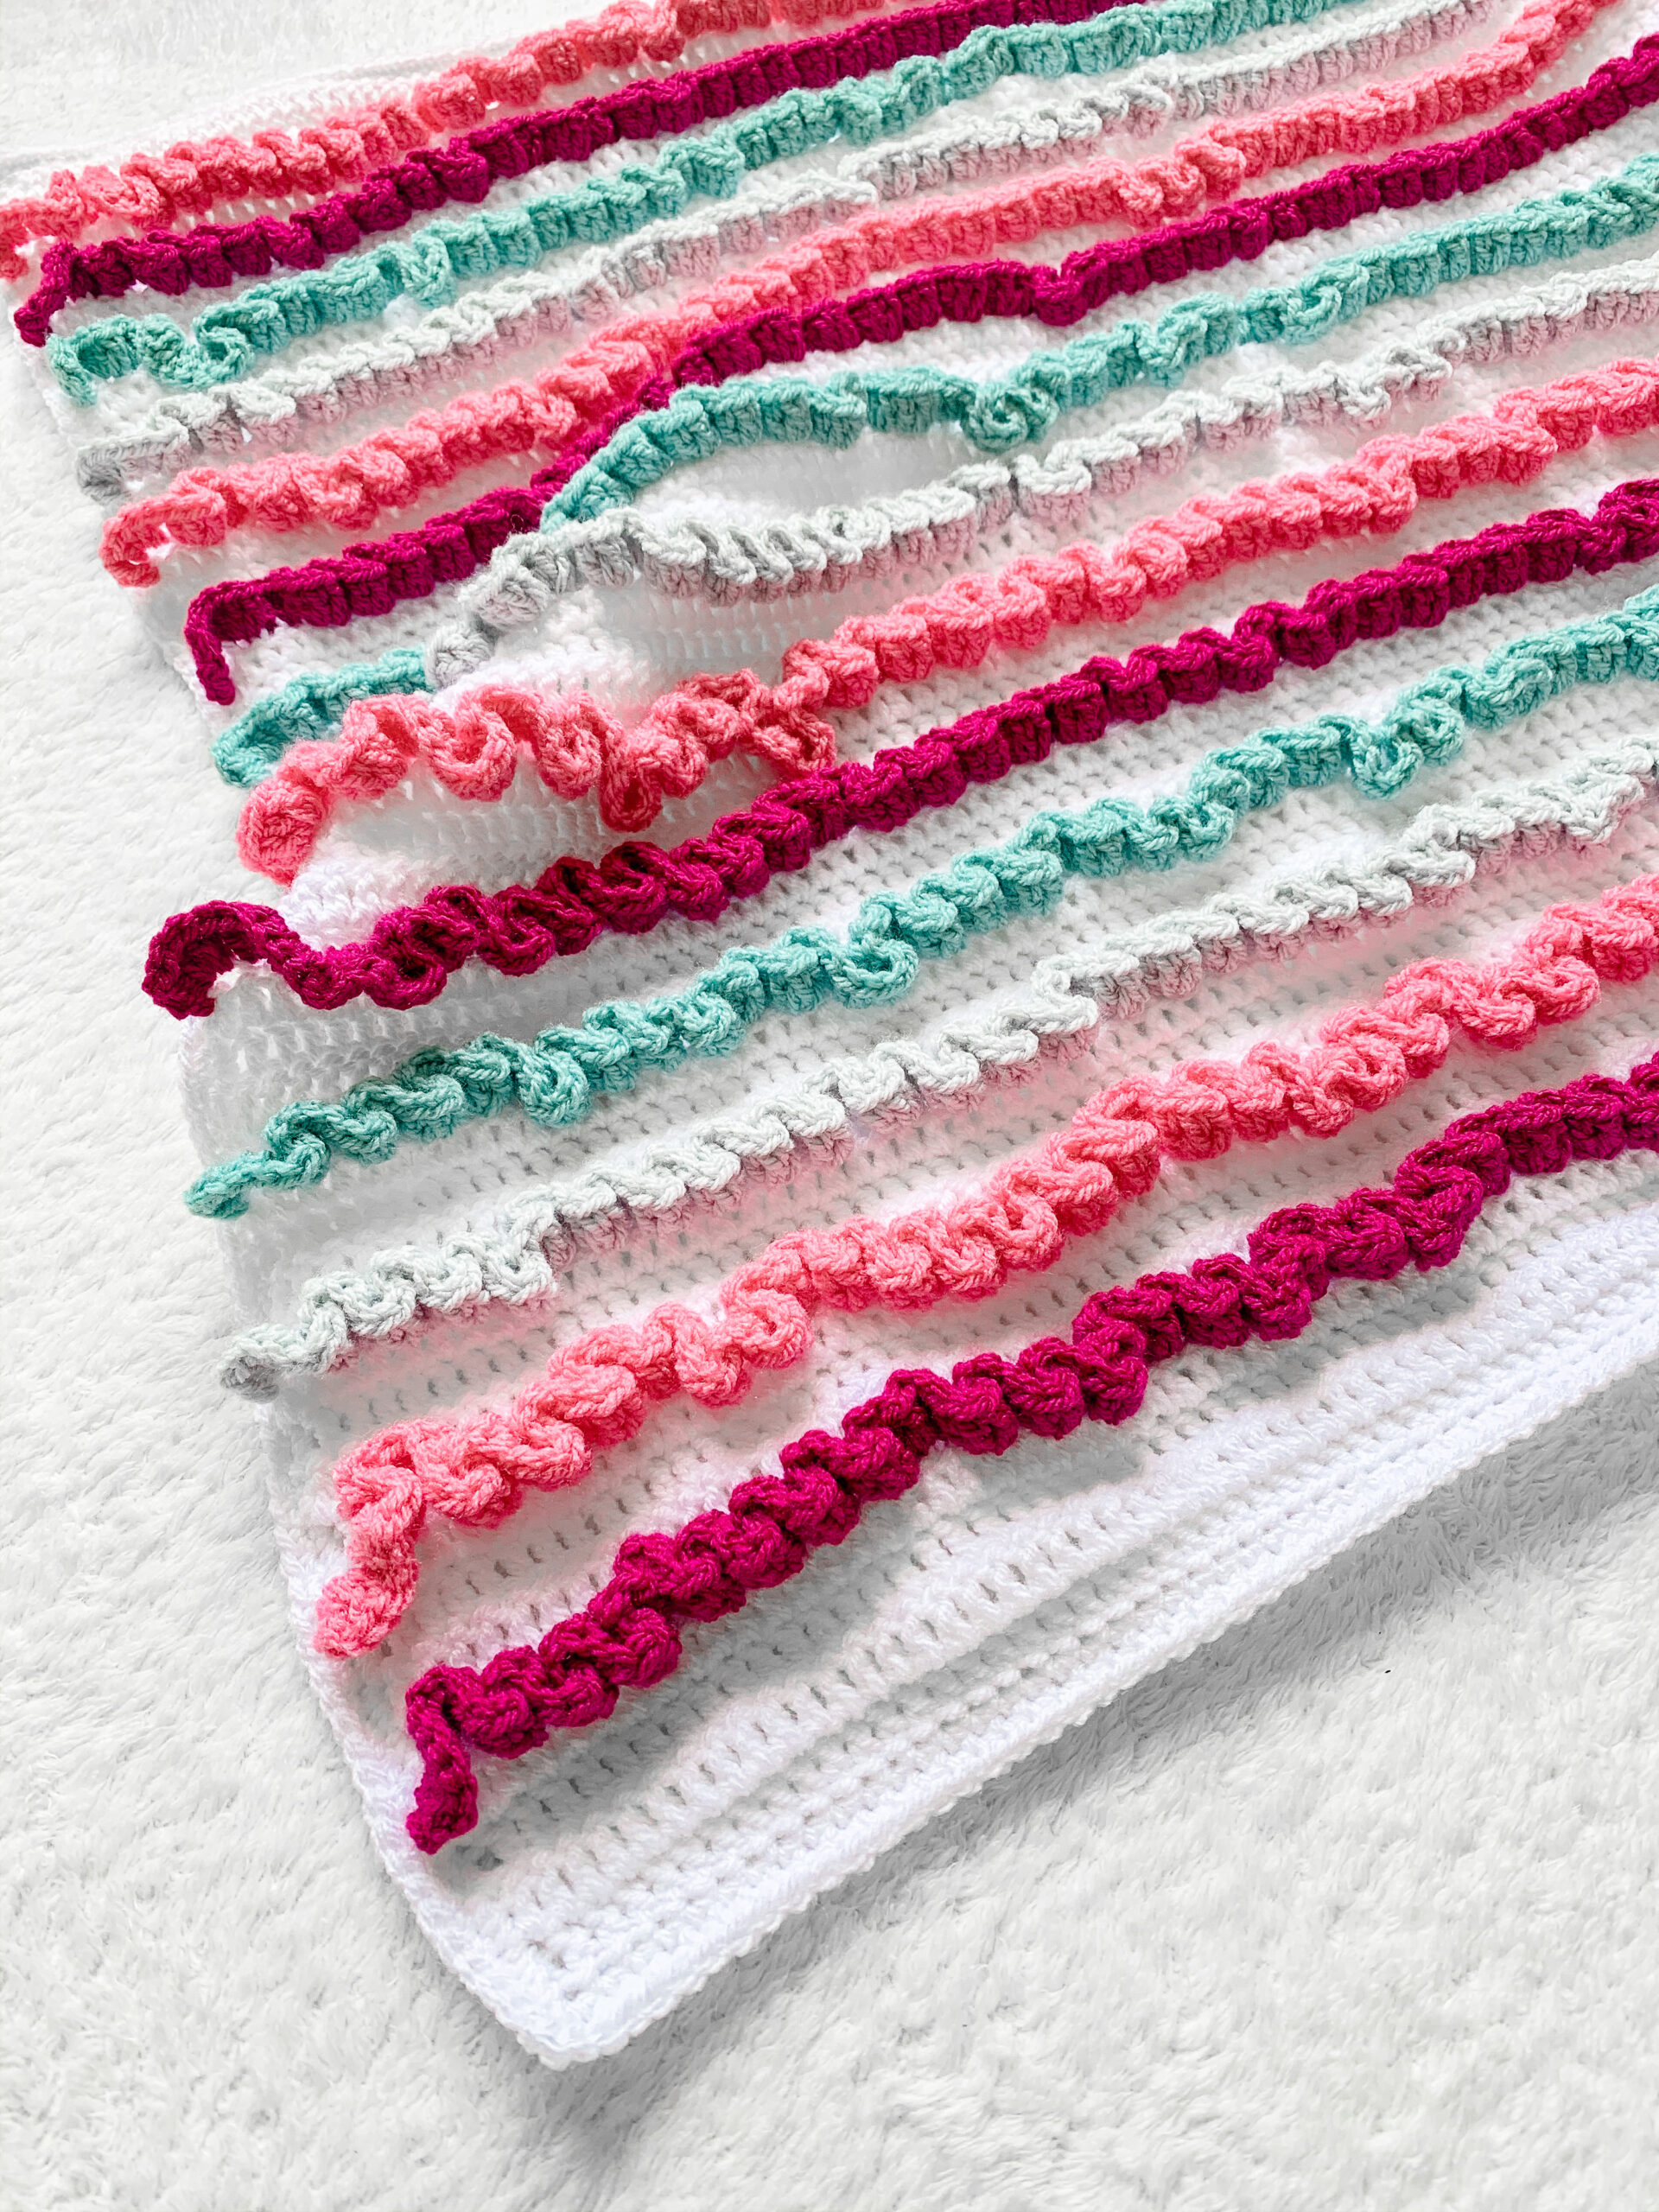 Ruffle Baby Blanket - Free Crochet Pattern